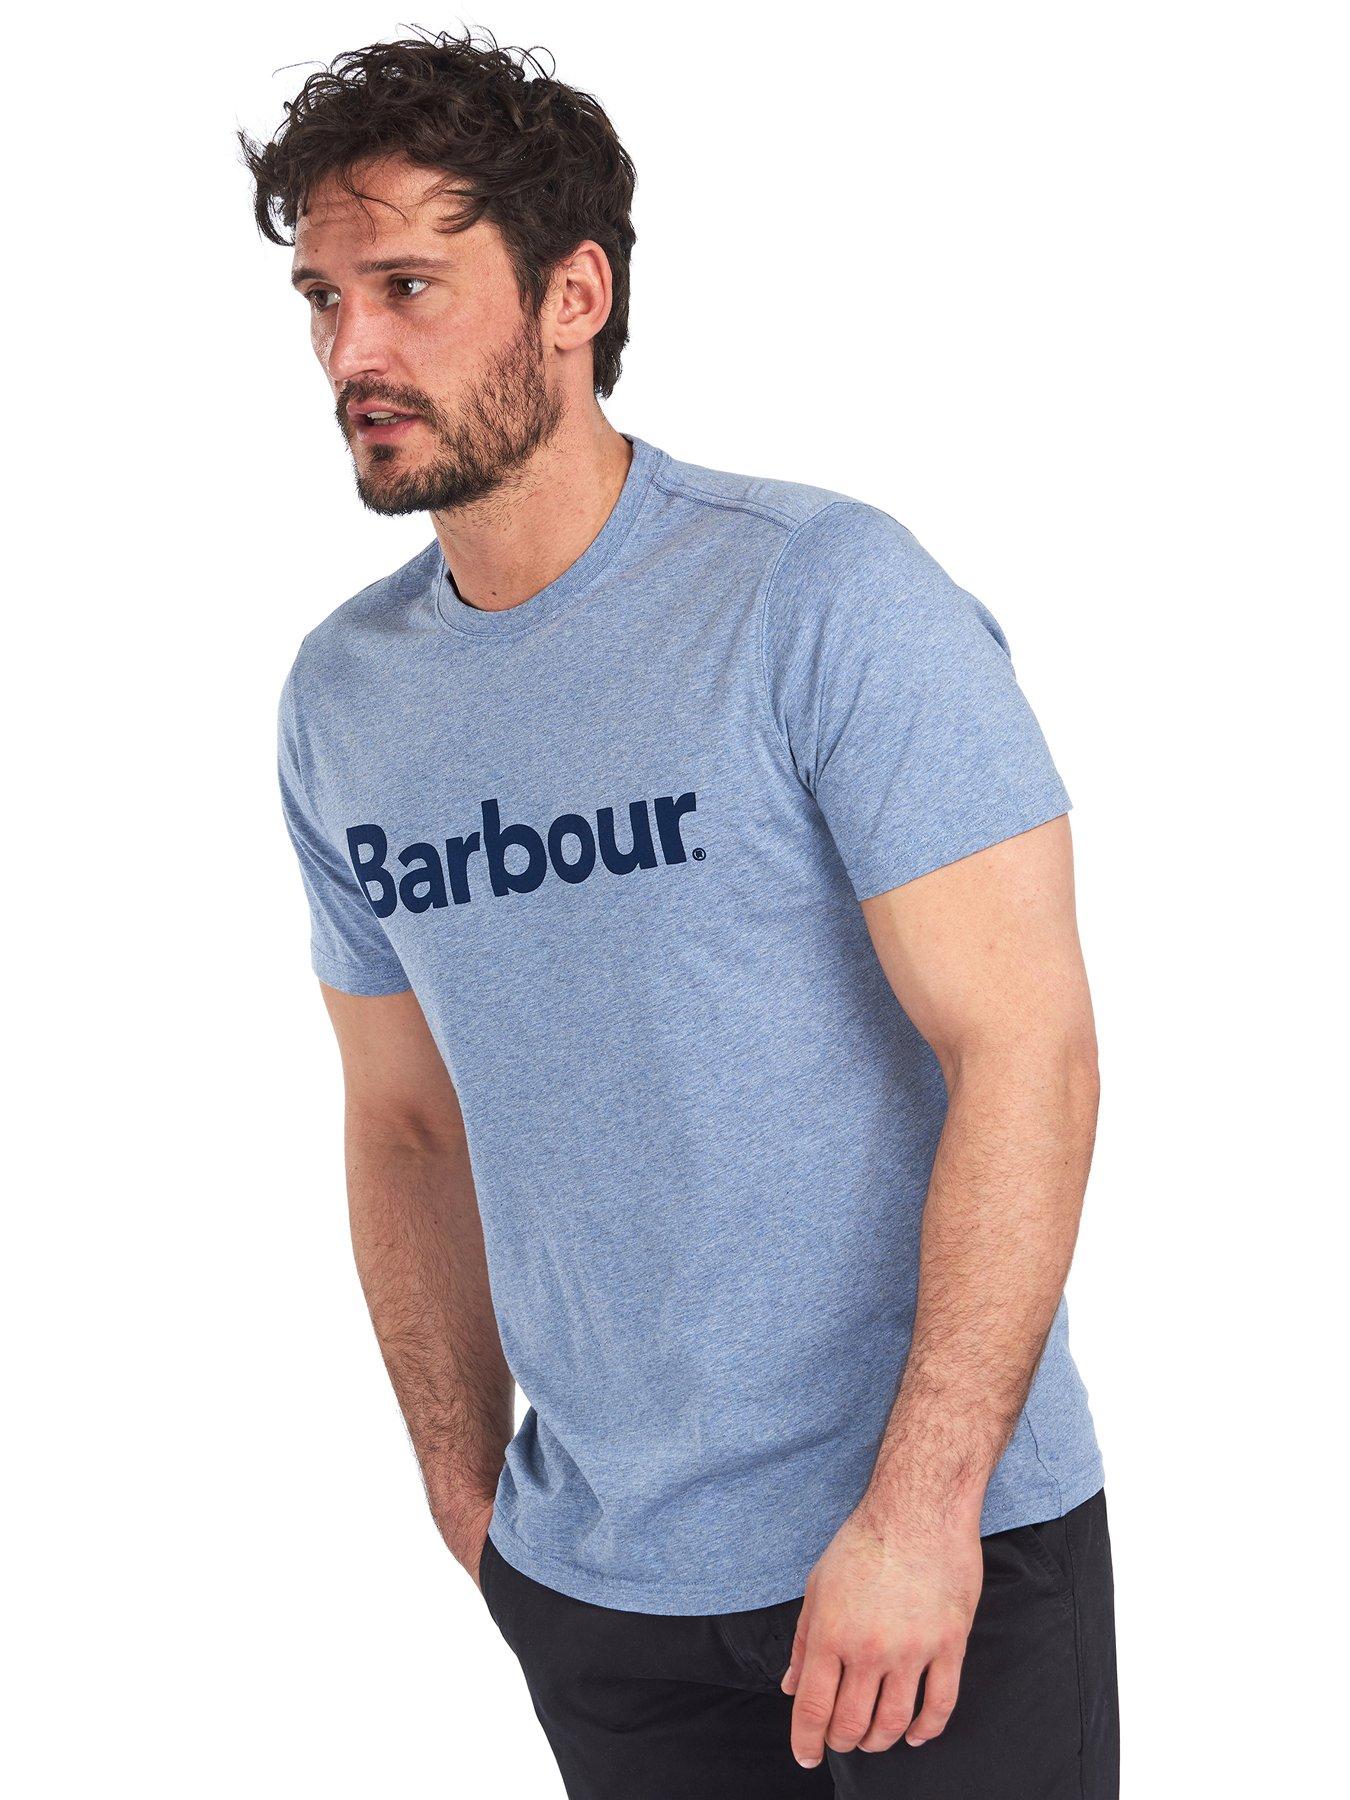 barbour shirts uk